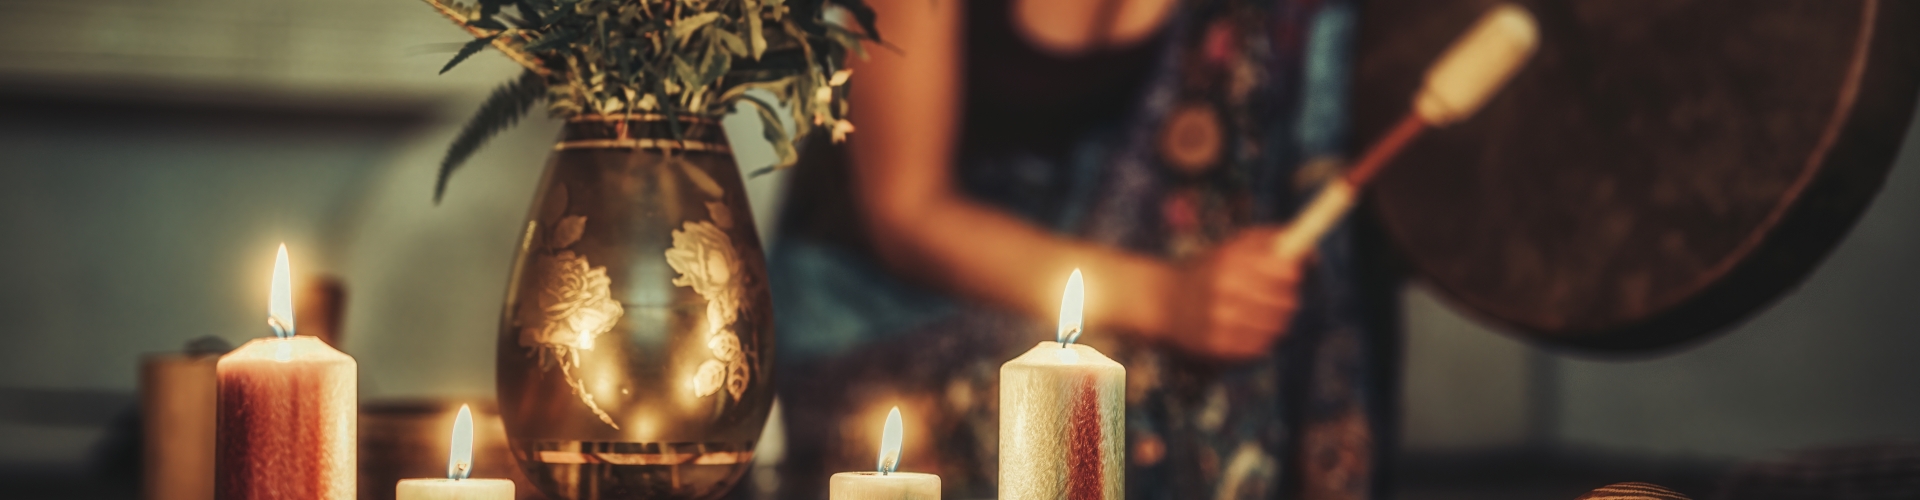 Vrouw drumt rond altaar met kaarsen